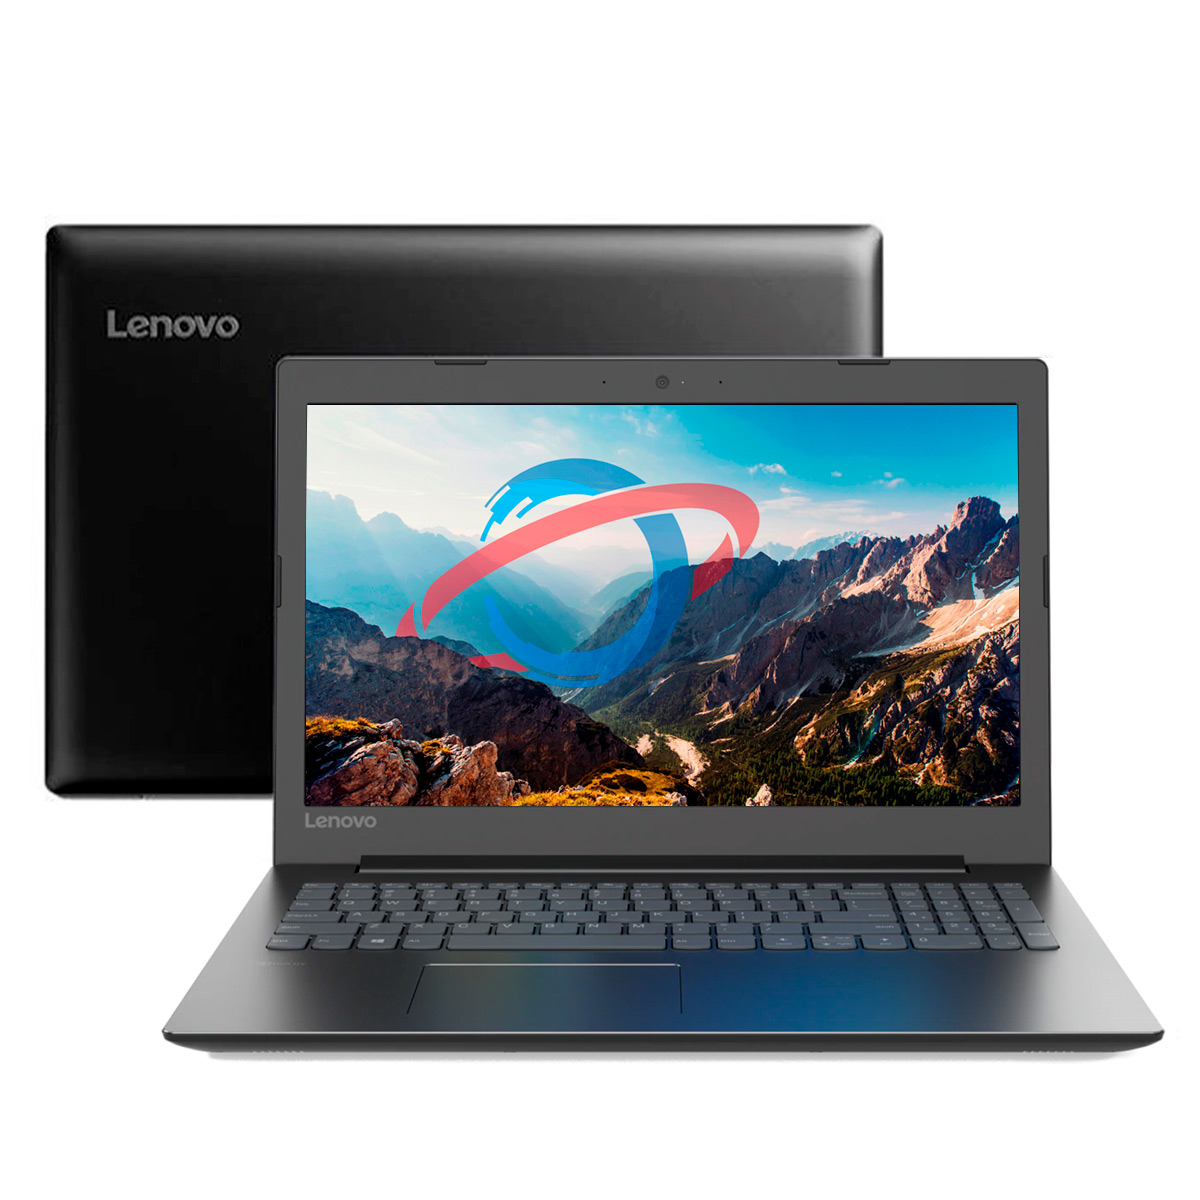 Notebook Lenovo Ideapad B330 - Tela 15.6